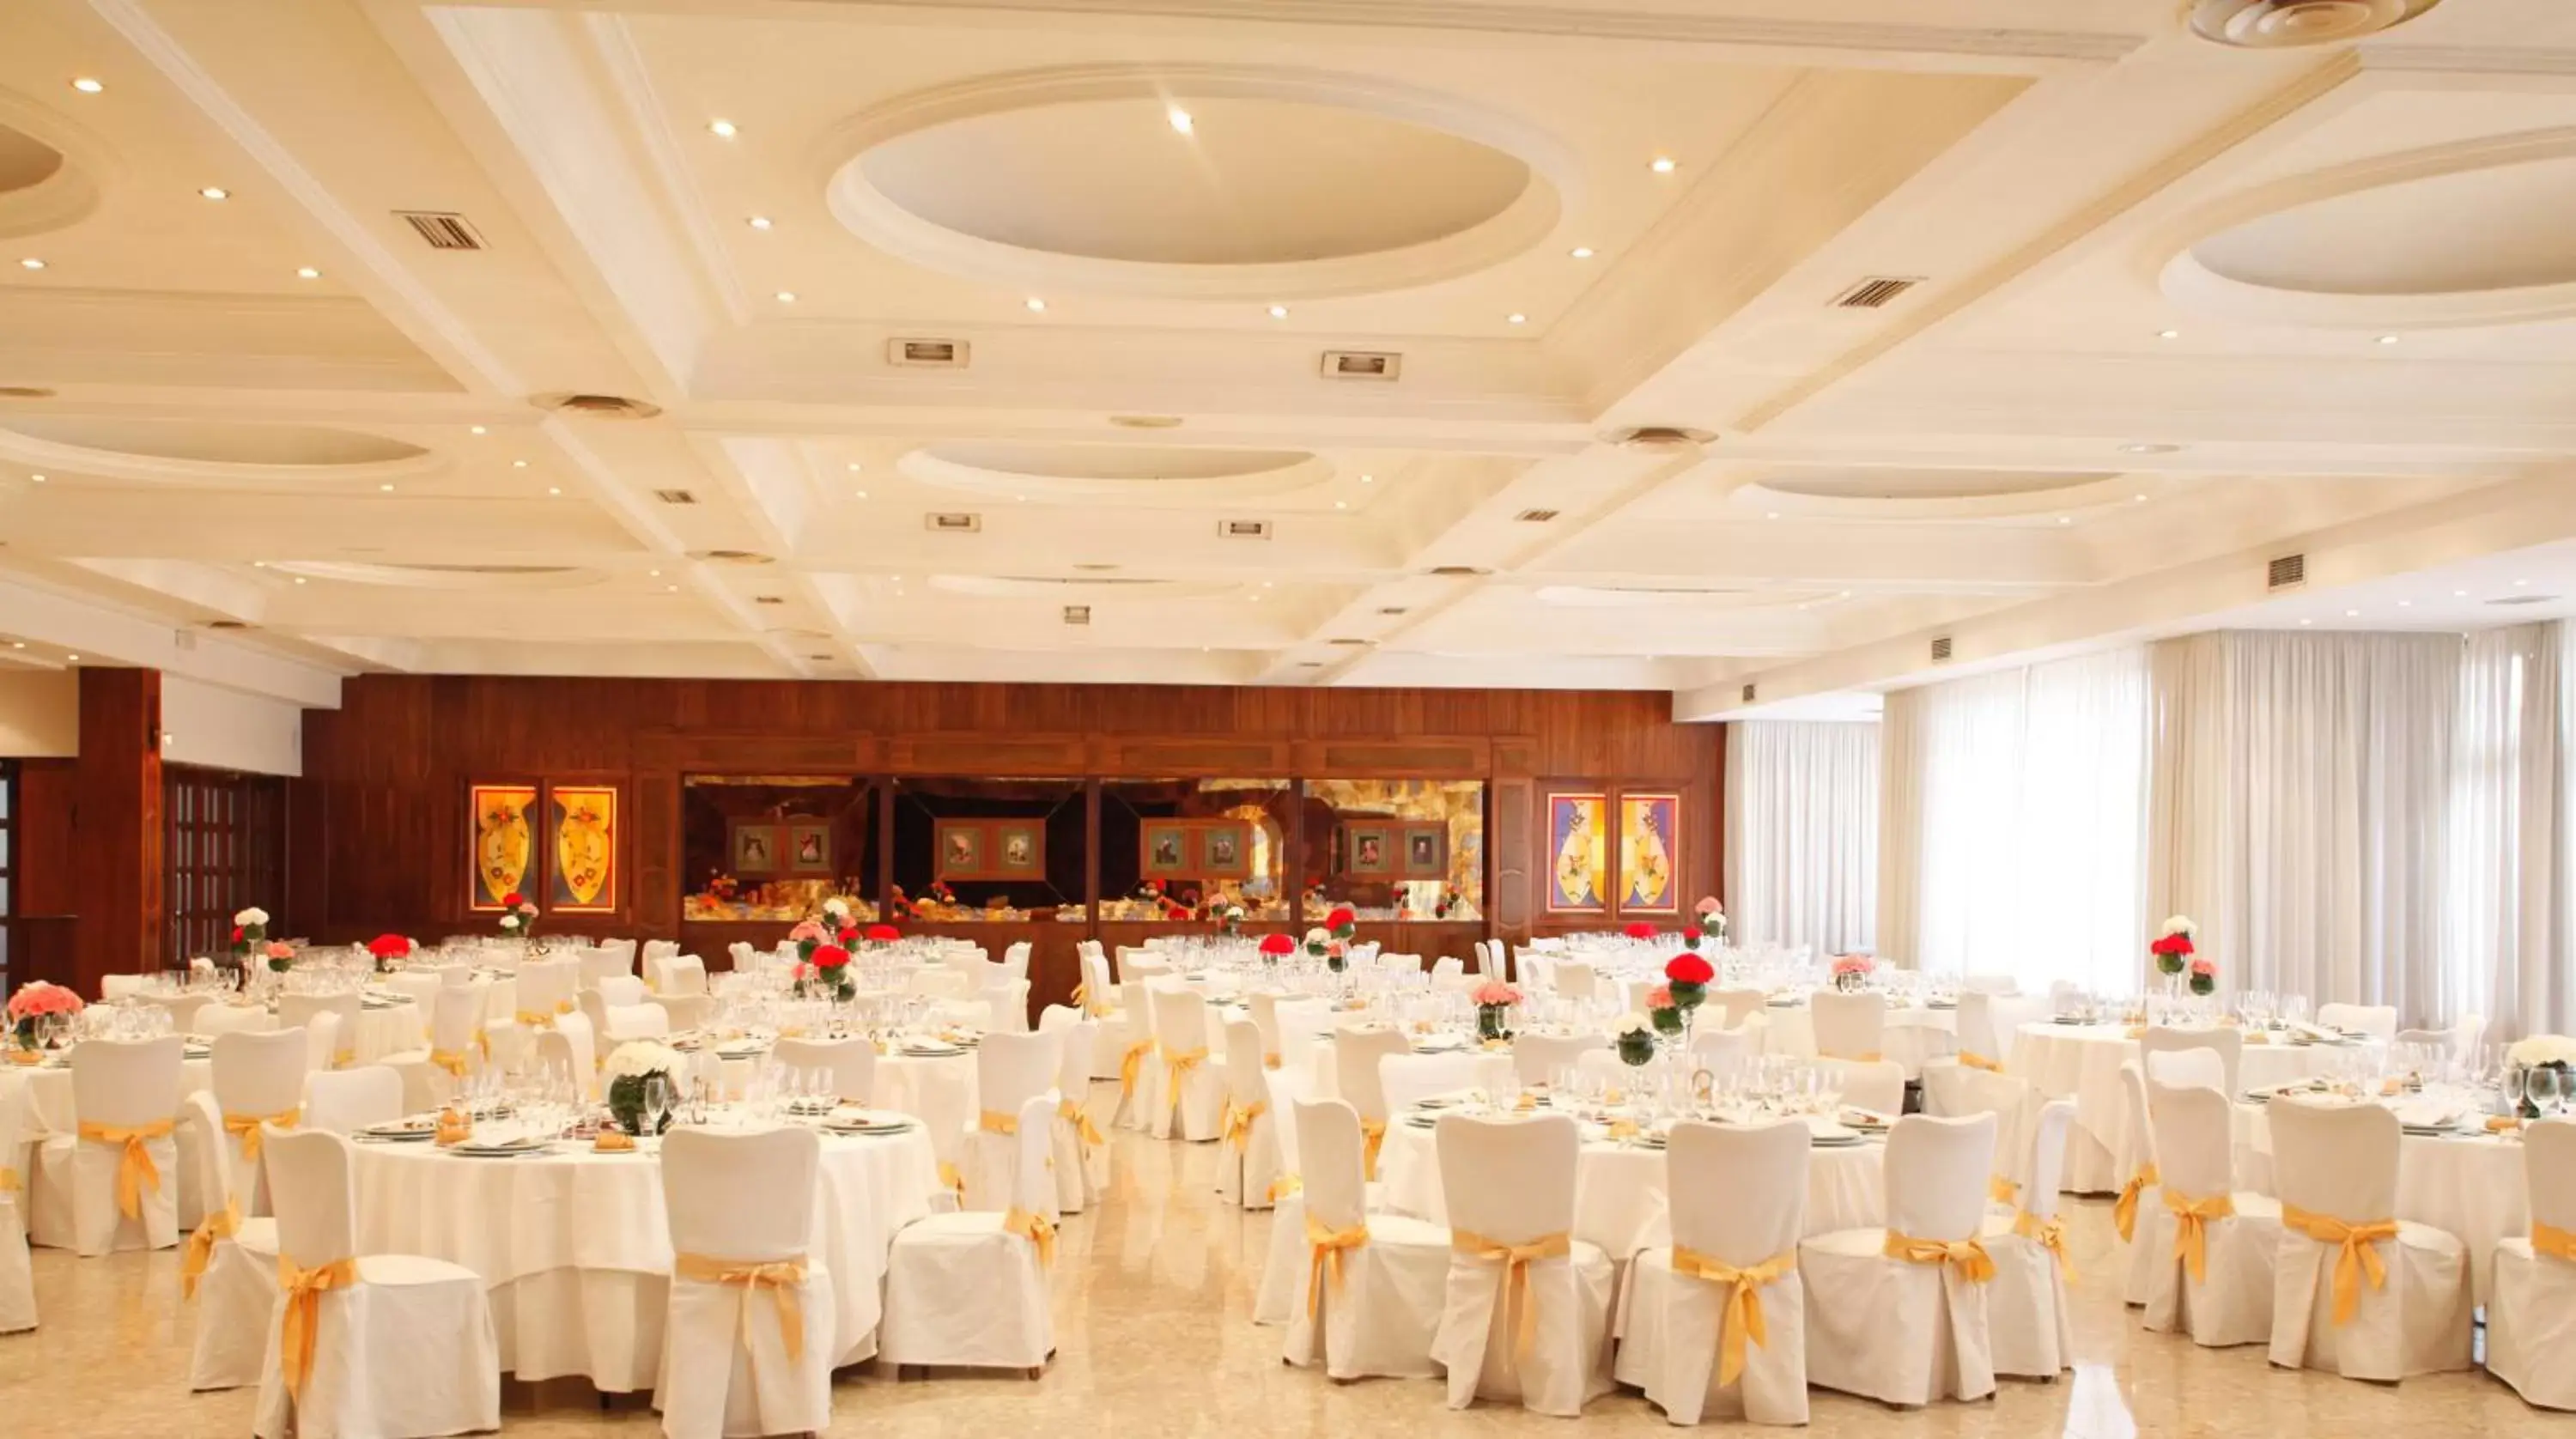 Banquet Facilities in Hotel Regio